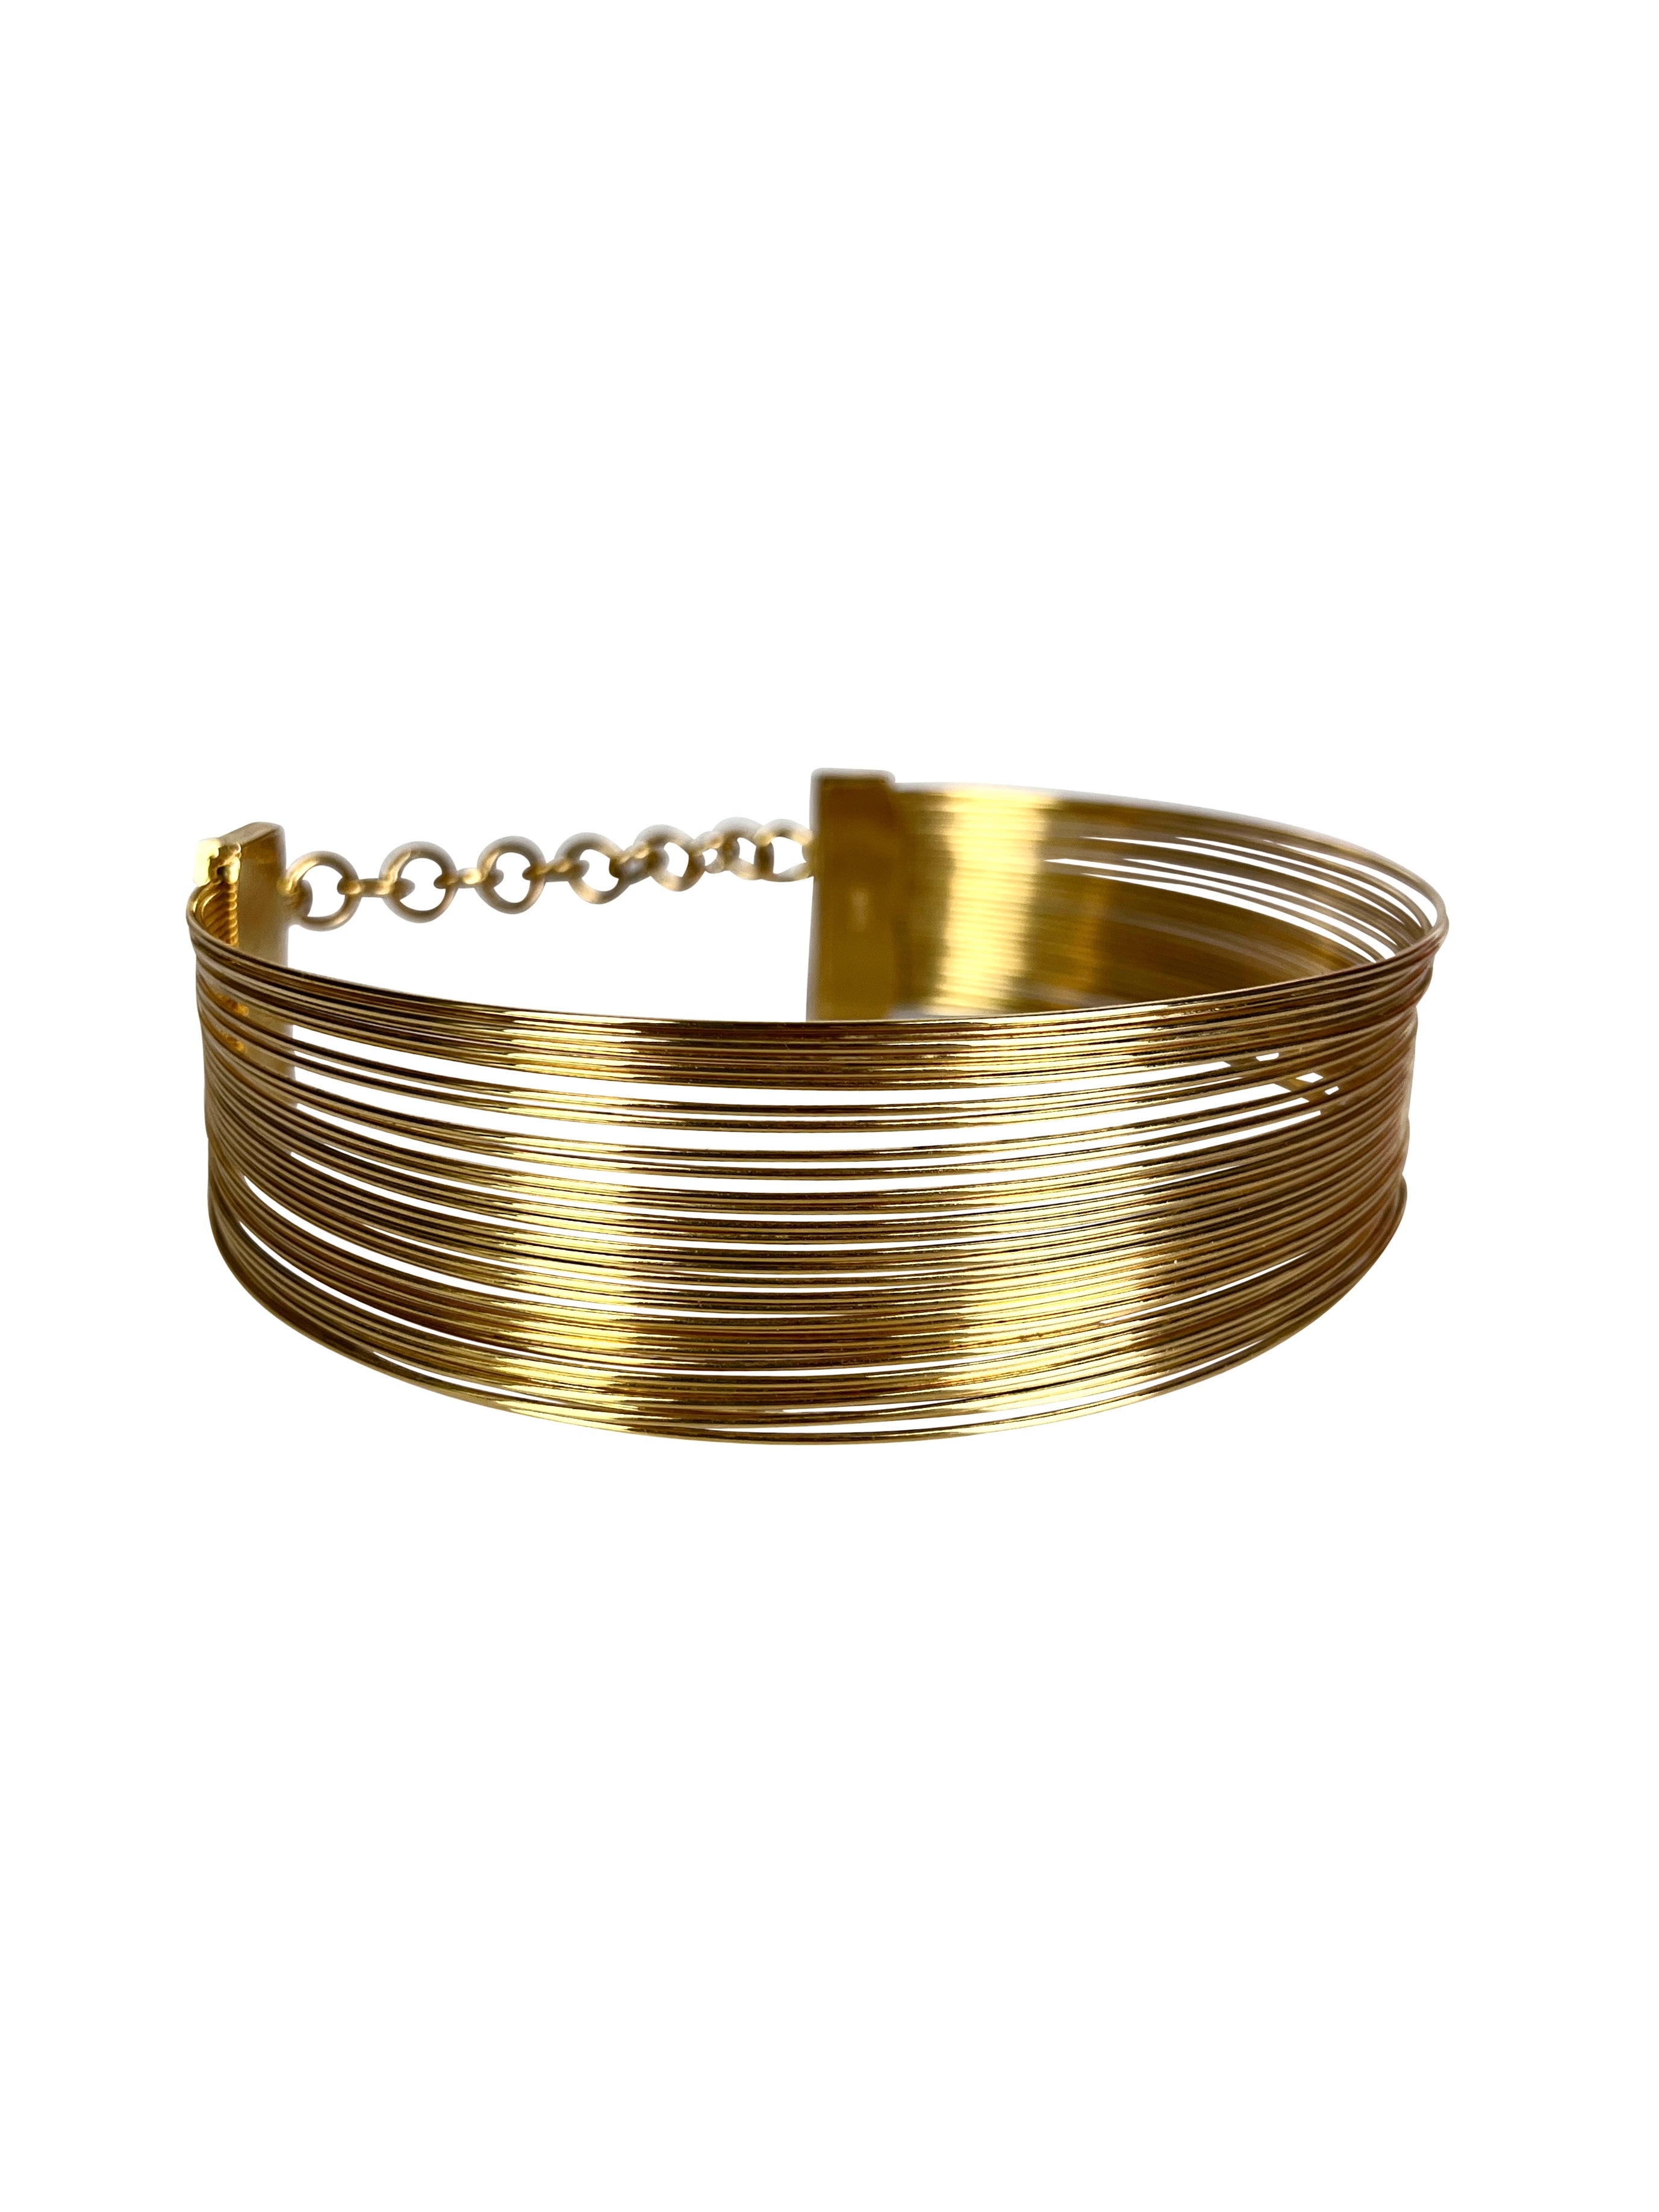 1999 Dior “J’adore” Golden Rings Choker